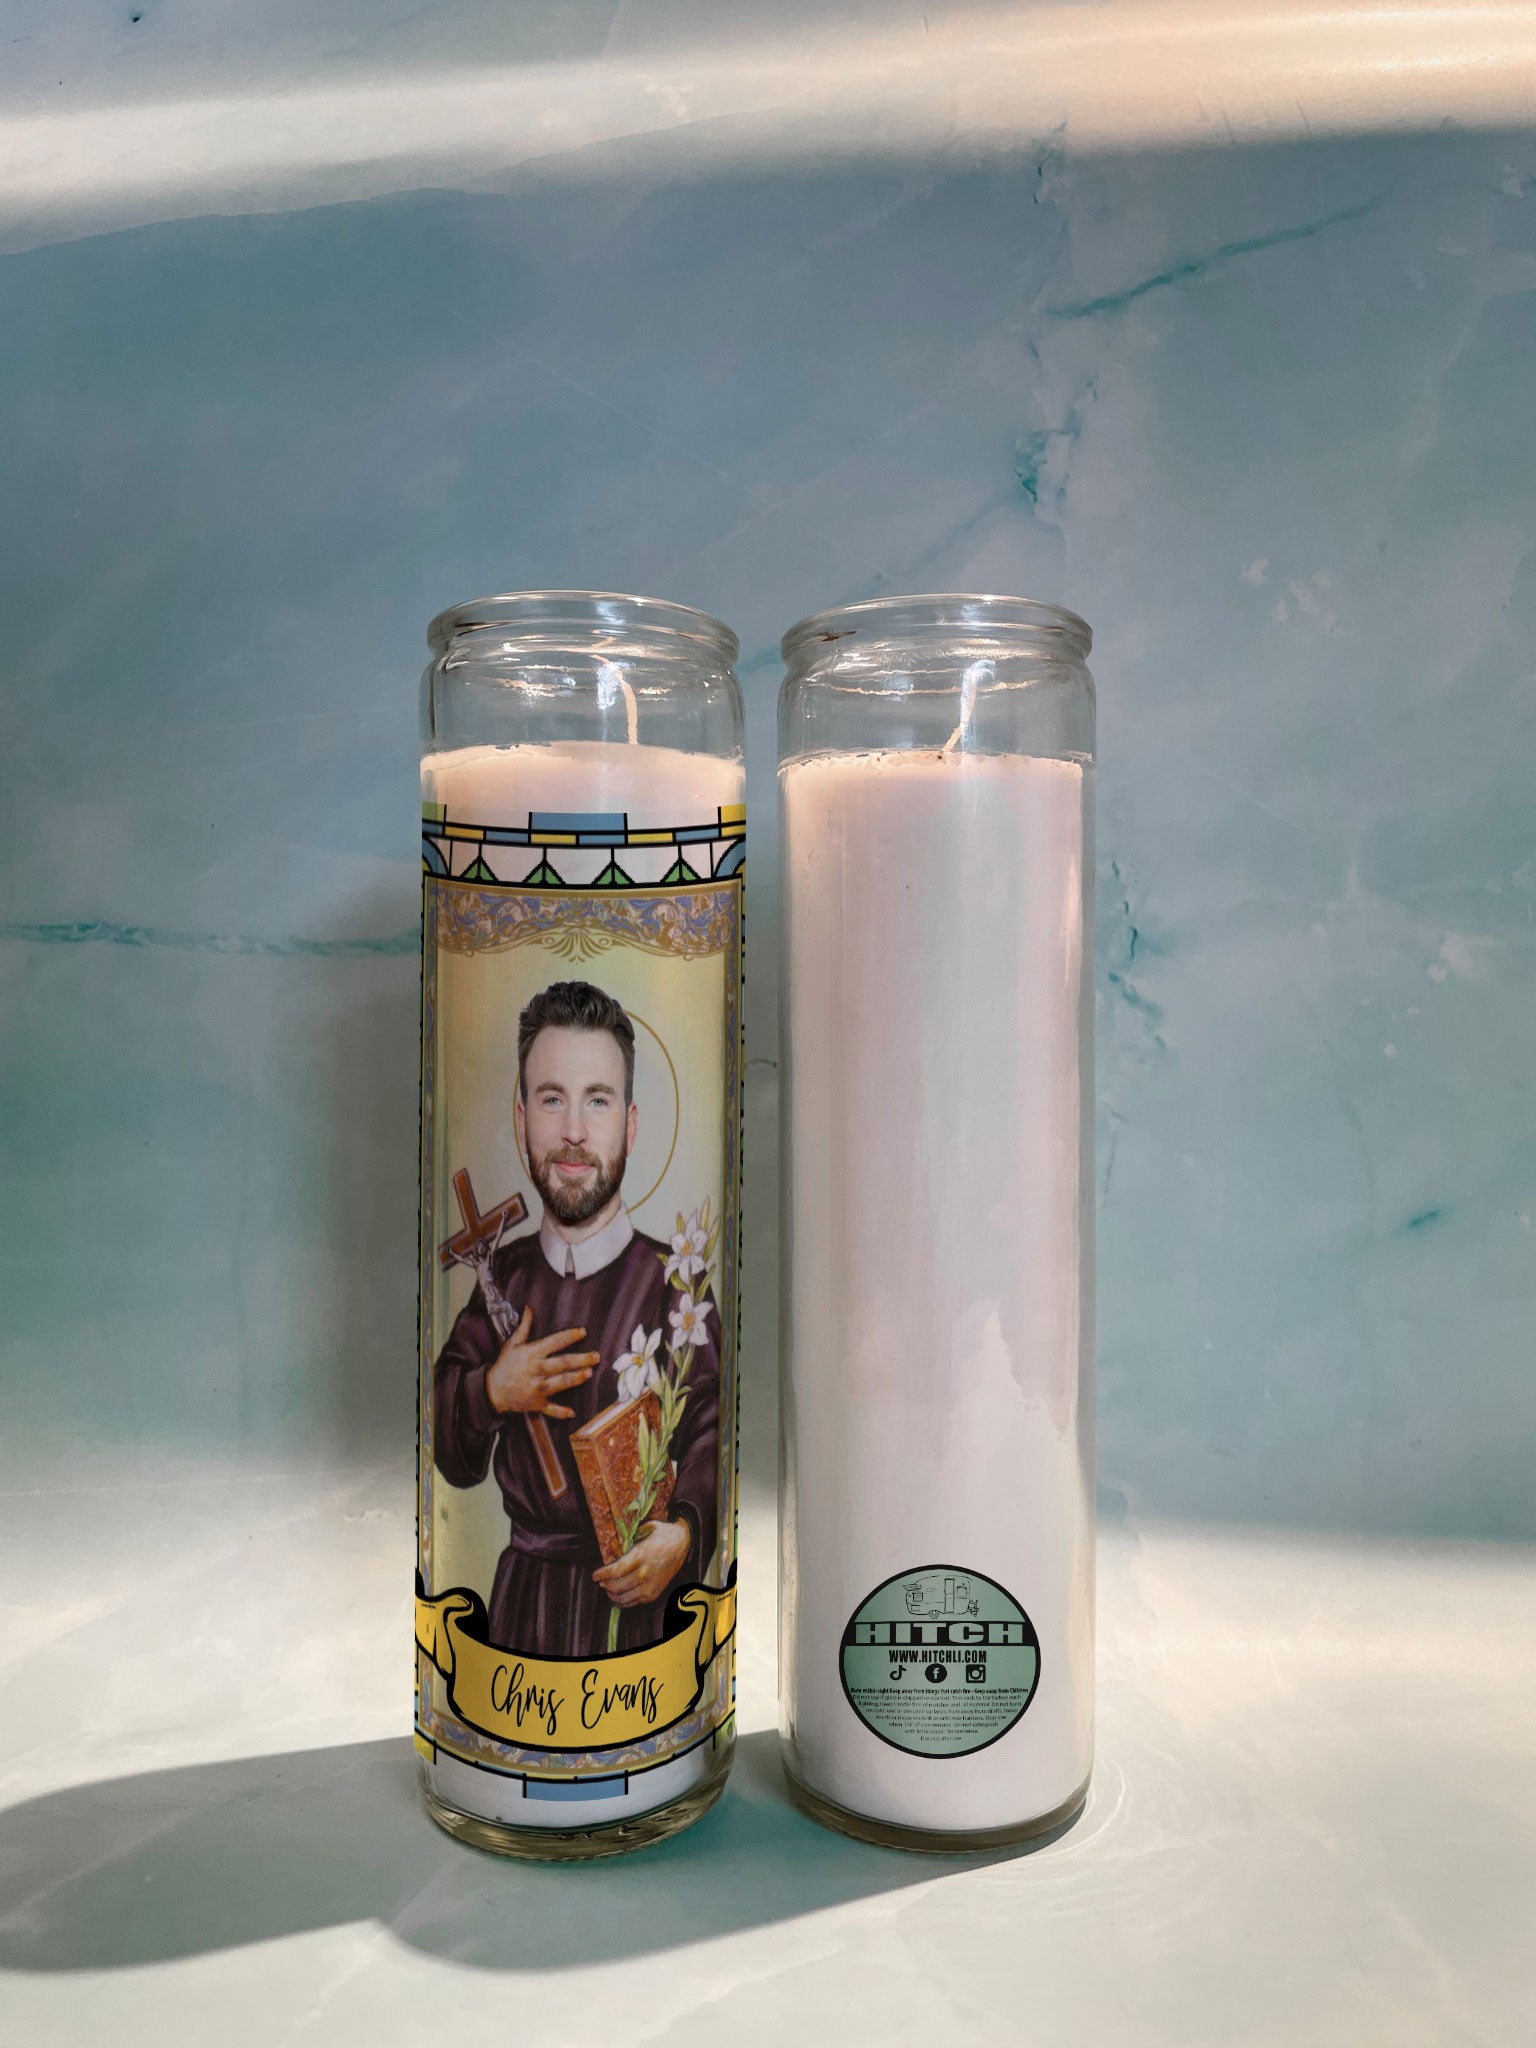 Chris Evans Original Prayer Candle